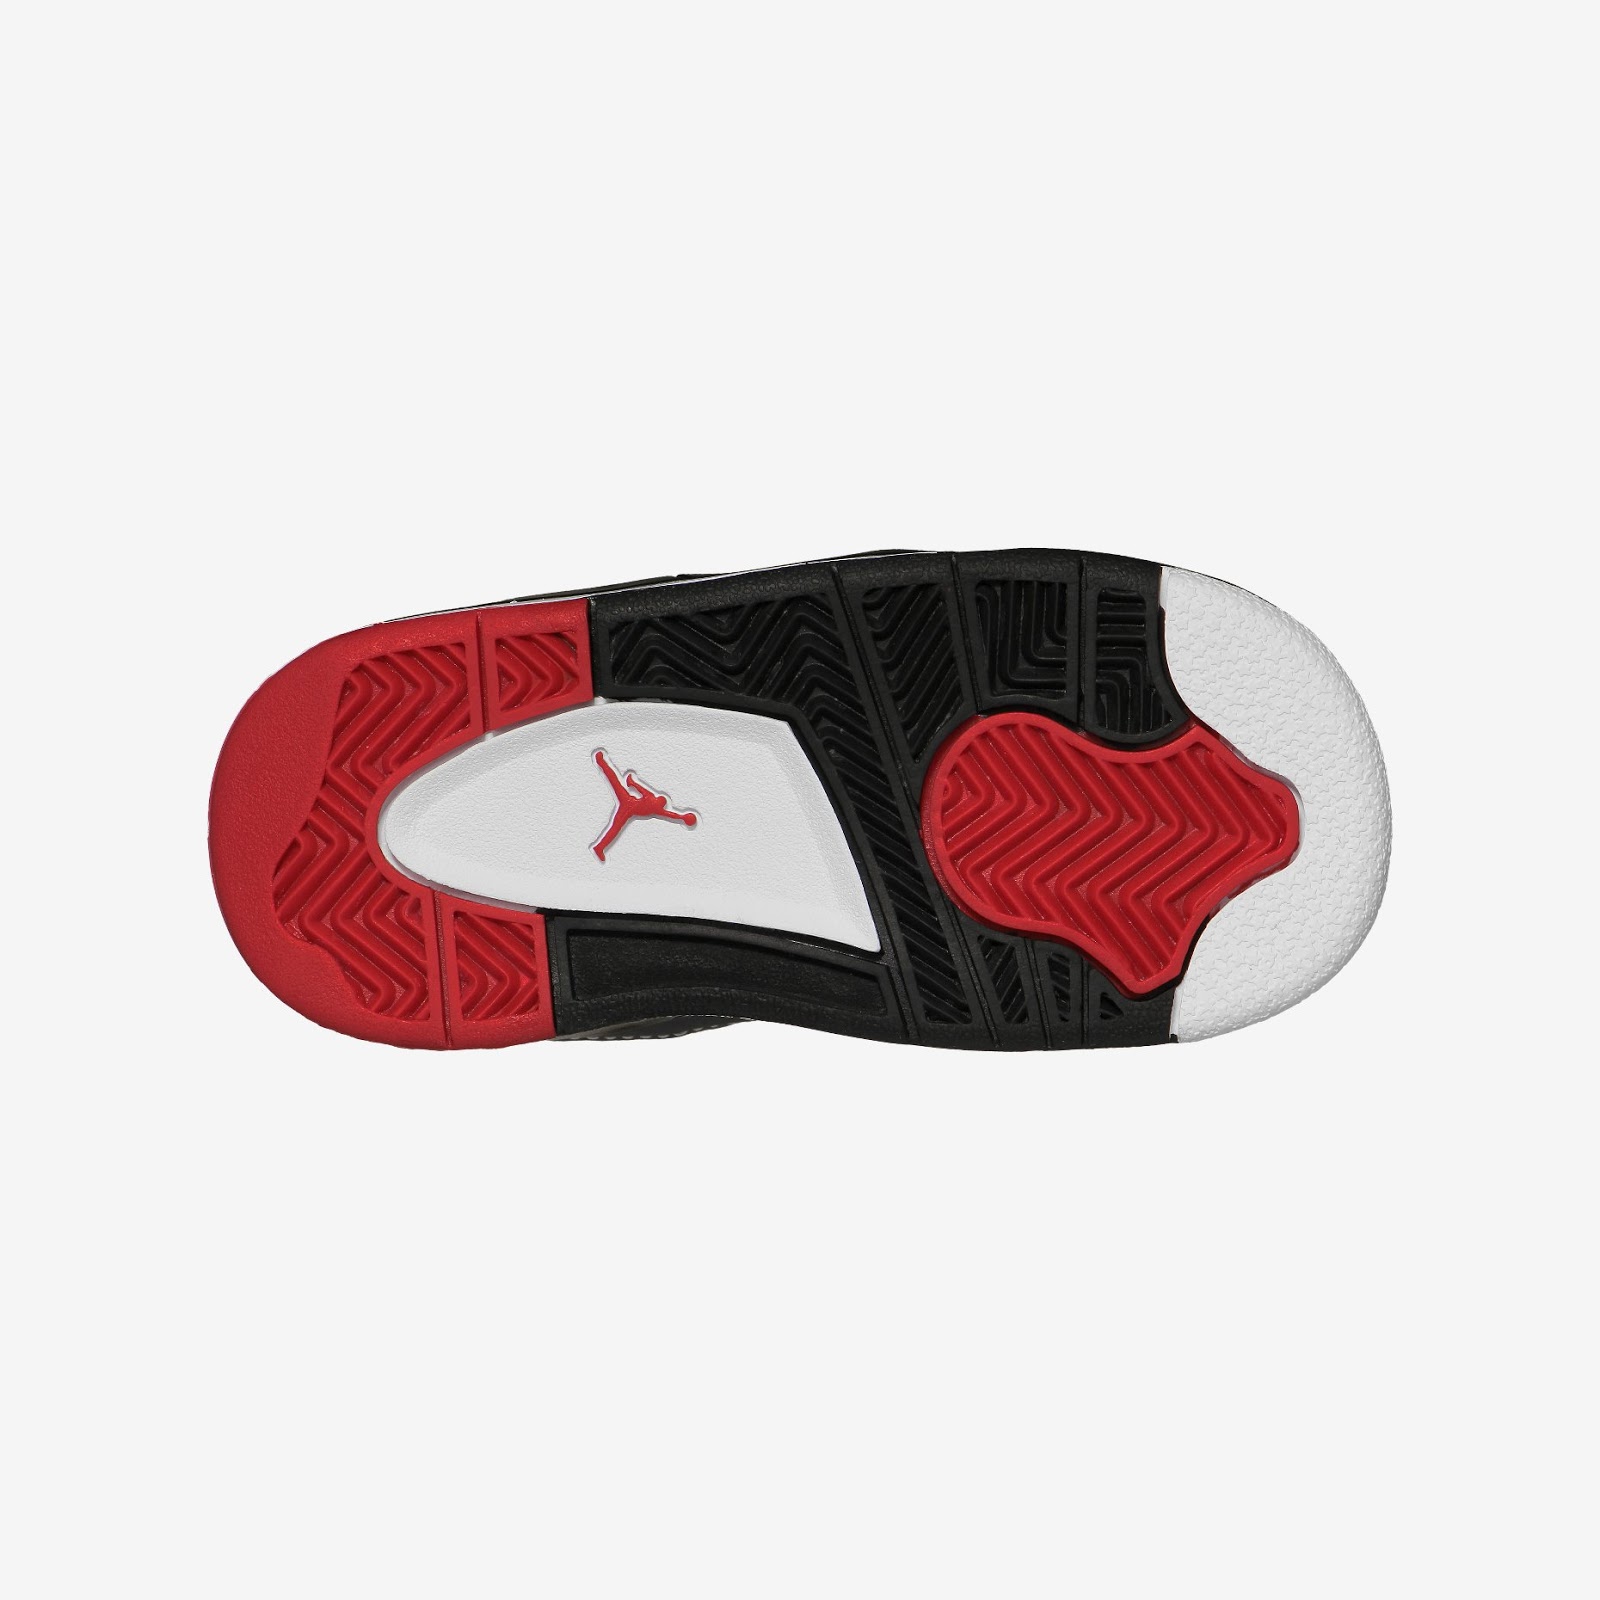 Nike Air Jordan Retro Basketball Shoes and Sandals!: JORDAN SON OF MARS ...